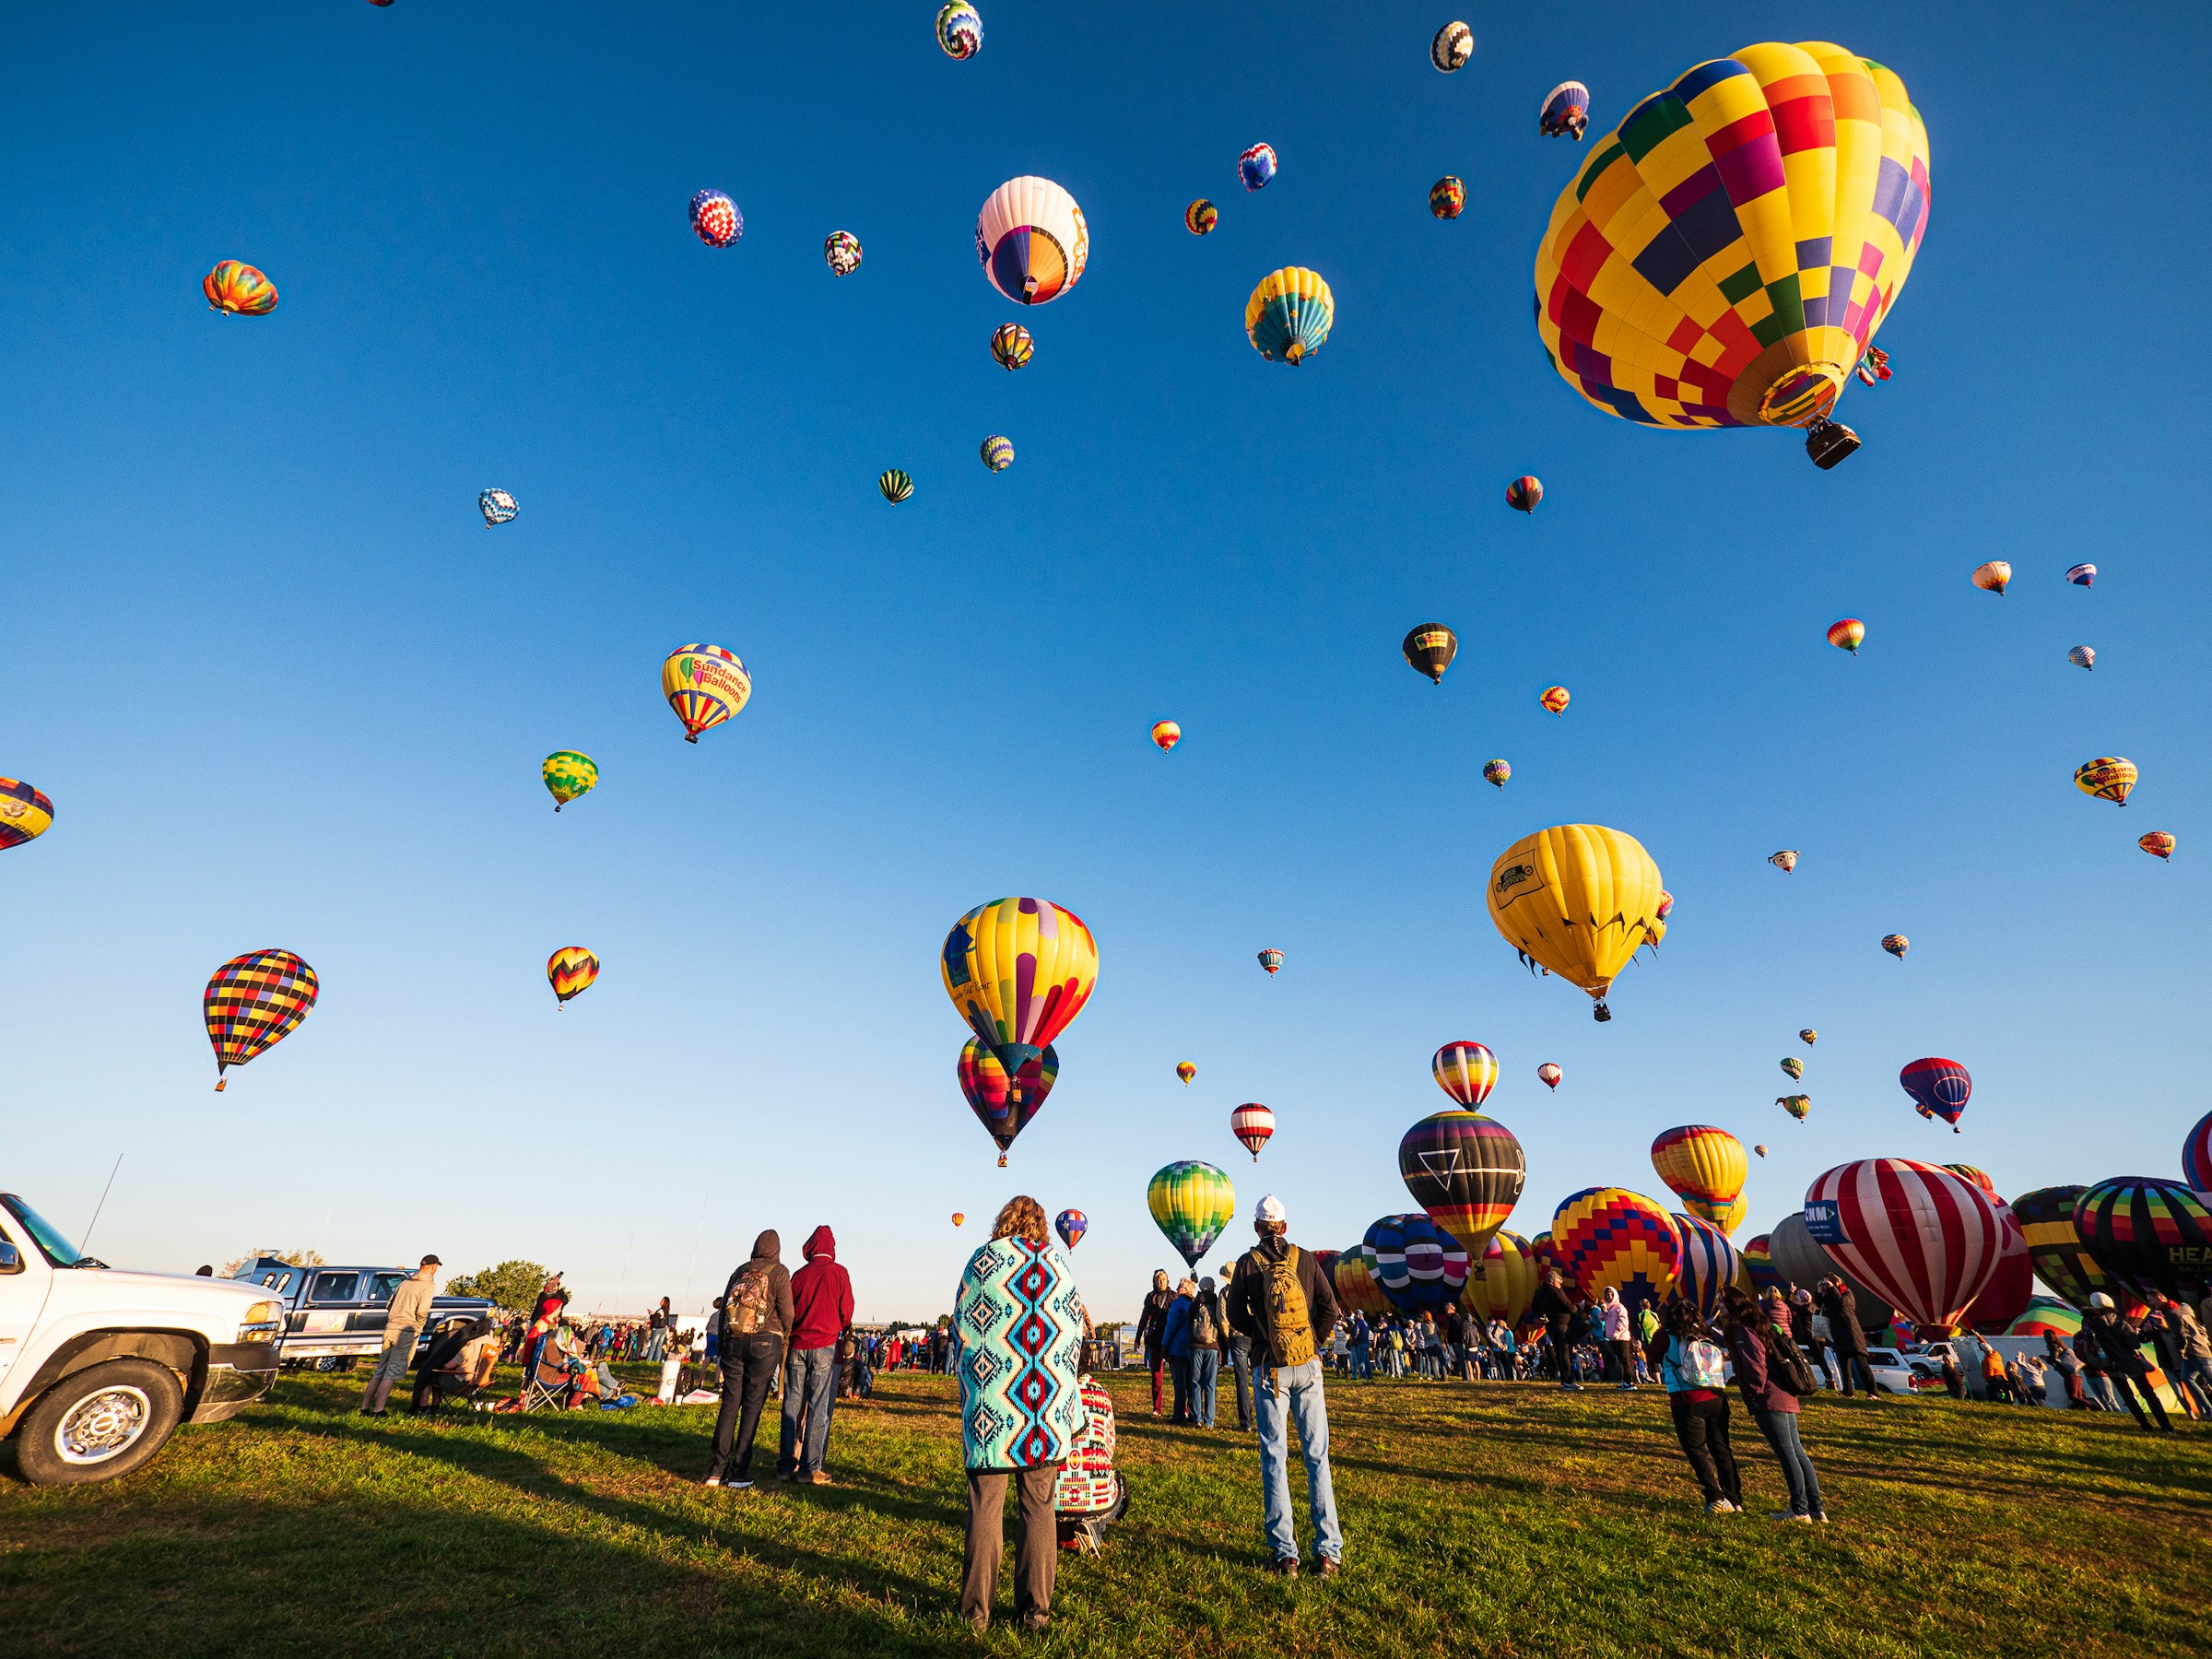 International Hot Air Balloon Fiesta in Albuquerque NM